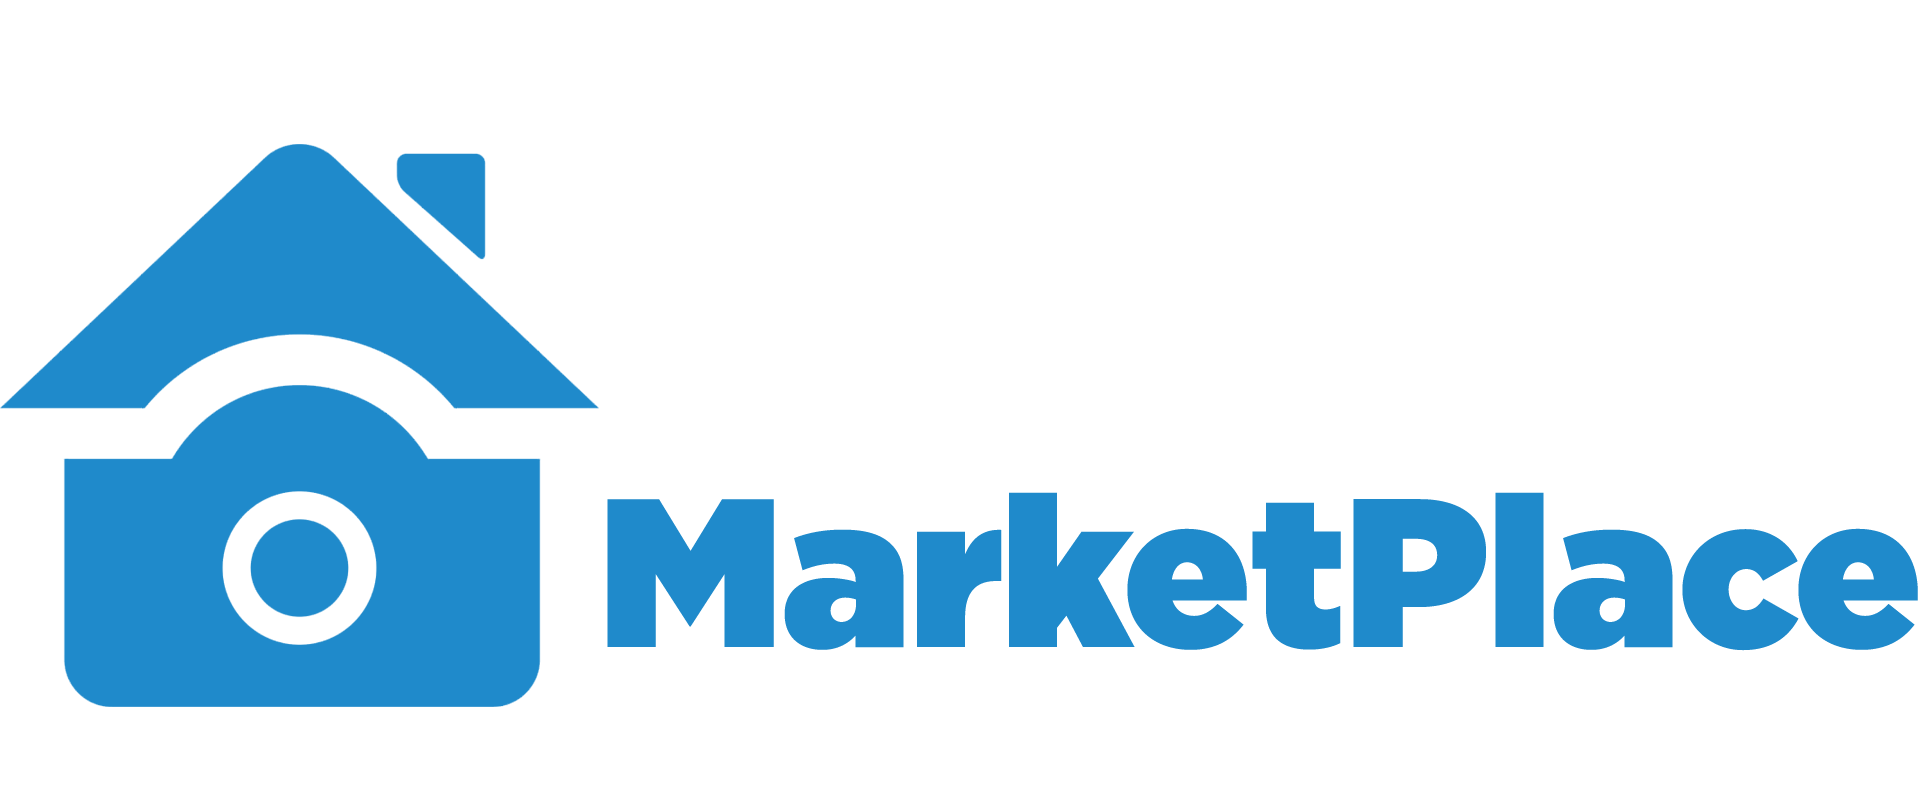 Marketplace Logo - Marketplace logo horizontal blue